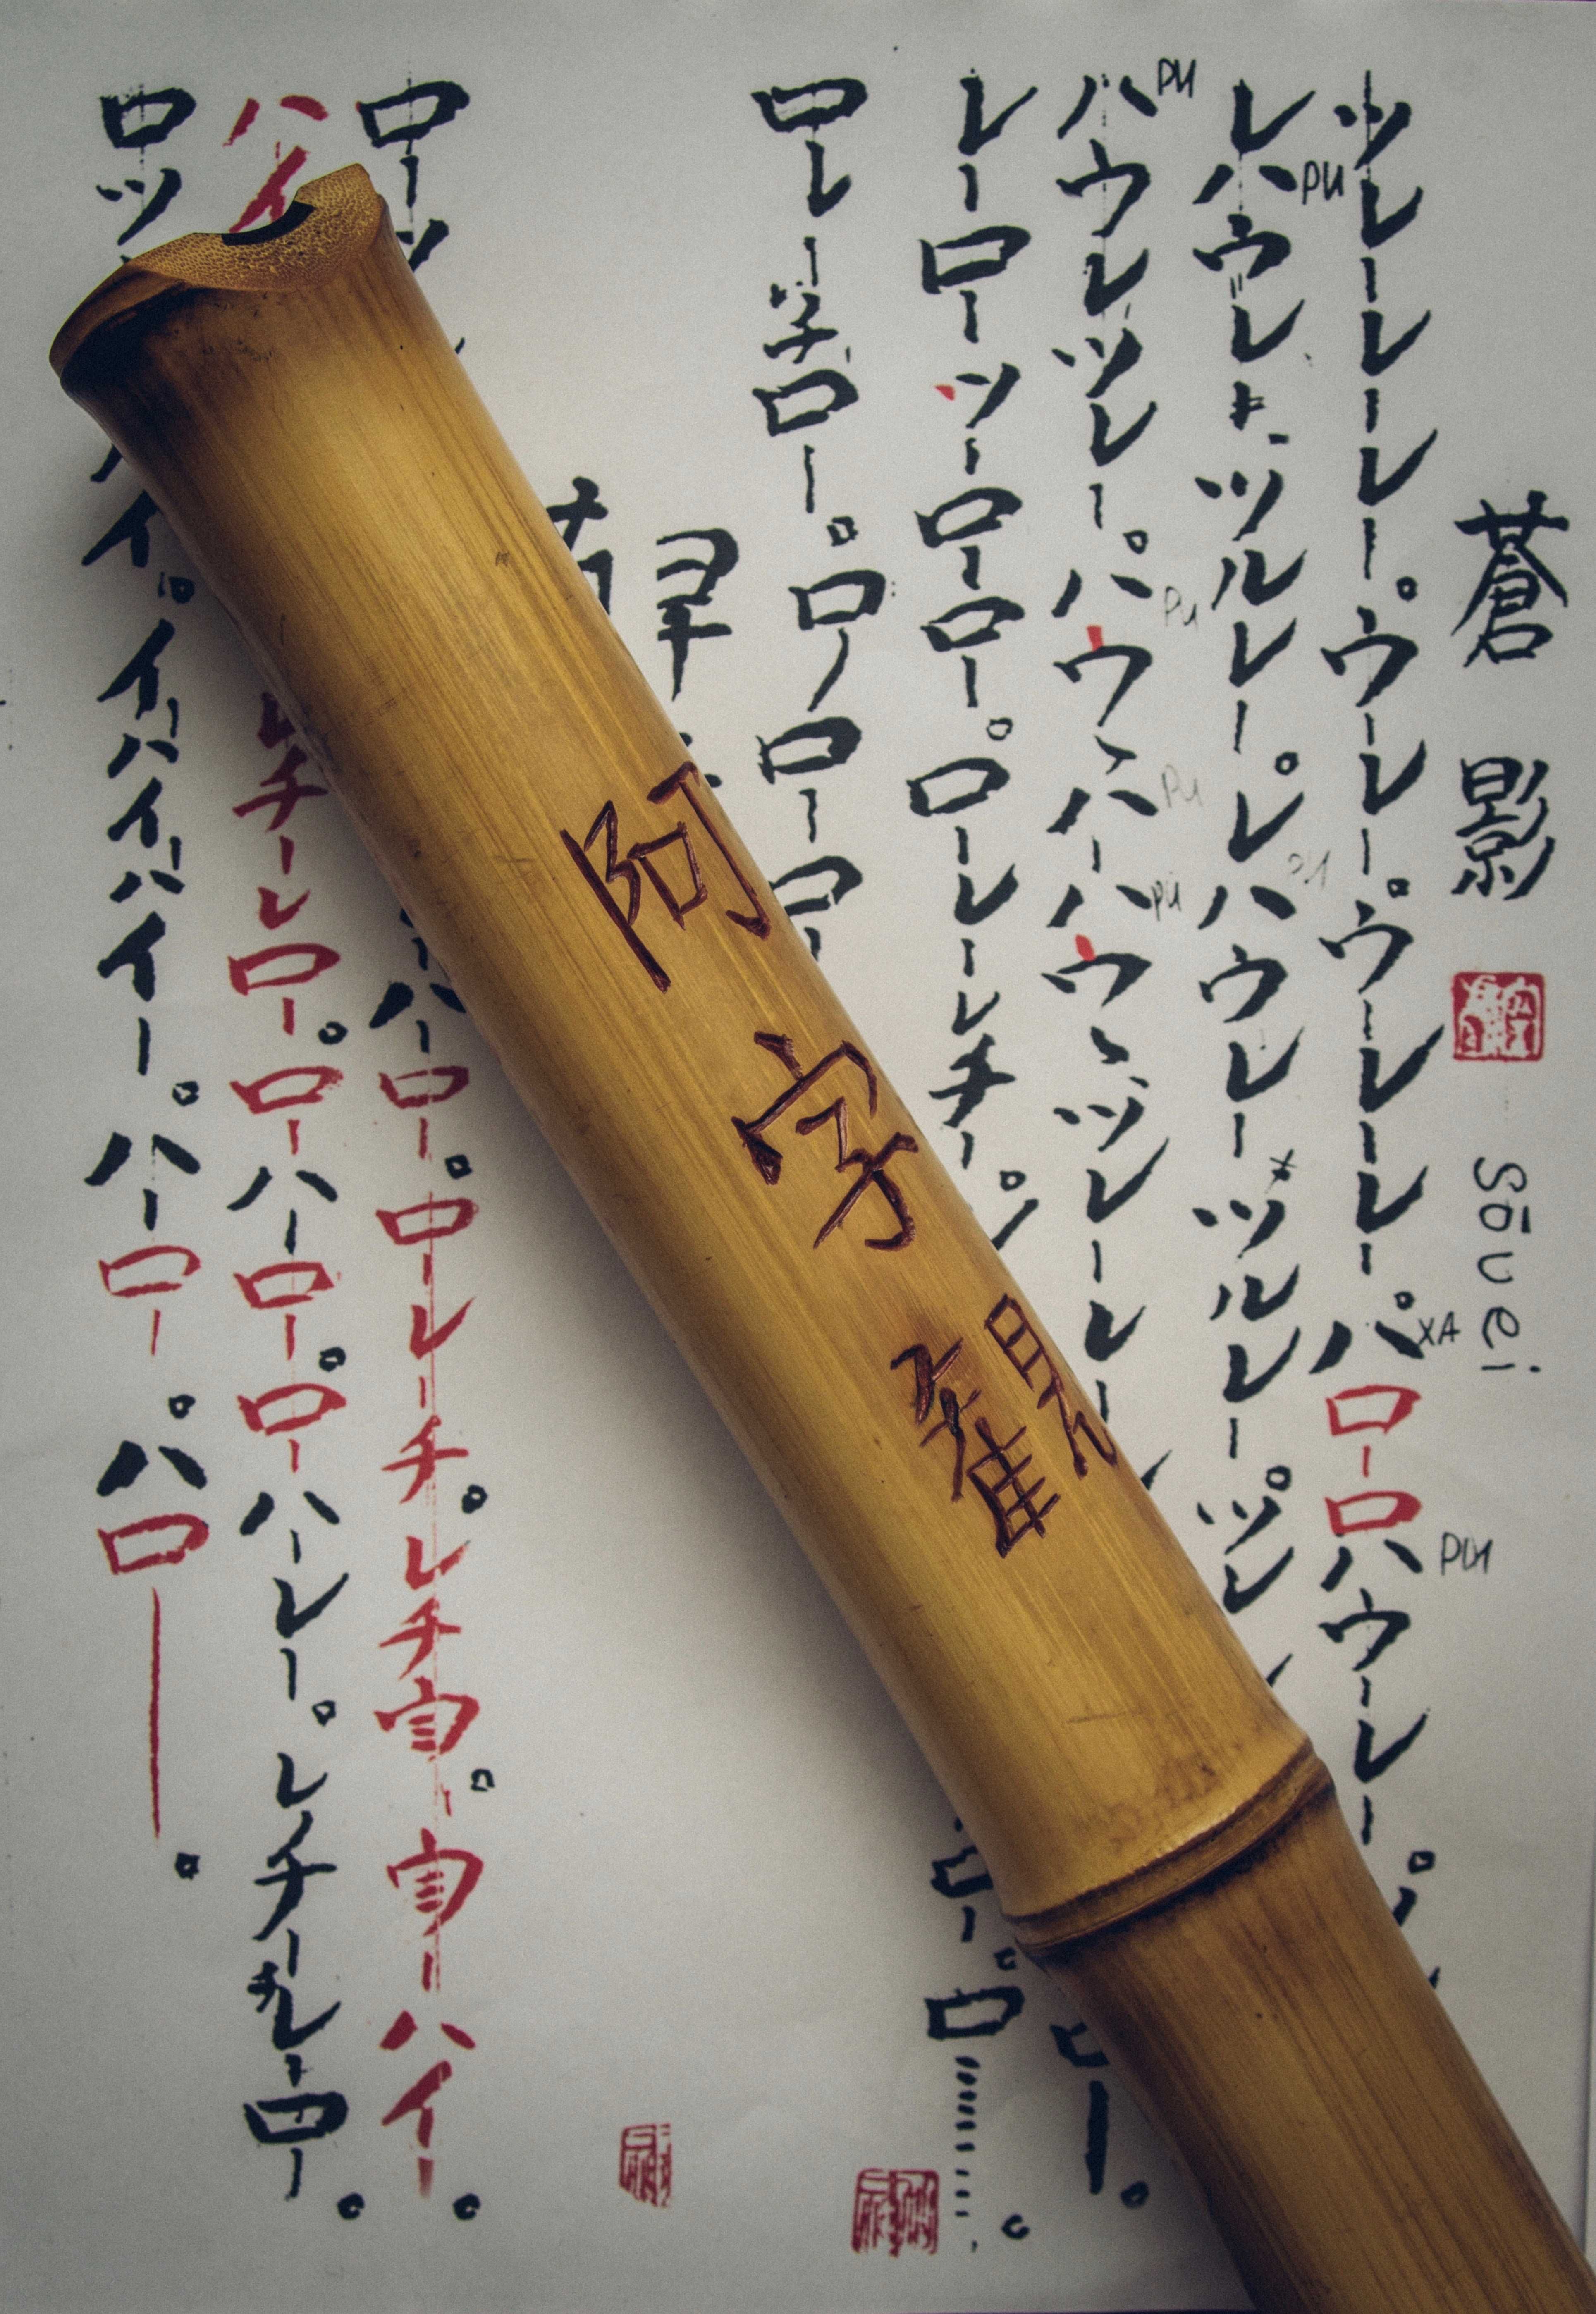 Сякухаті (Проф. Інструмент, концертний) Японська Флейта Shakuhachi